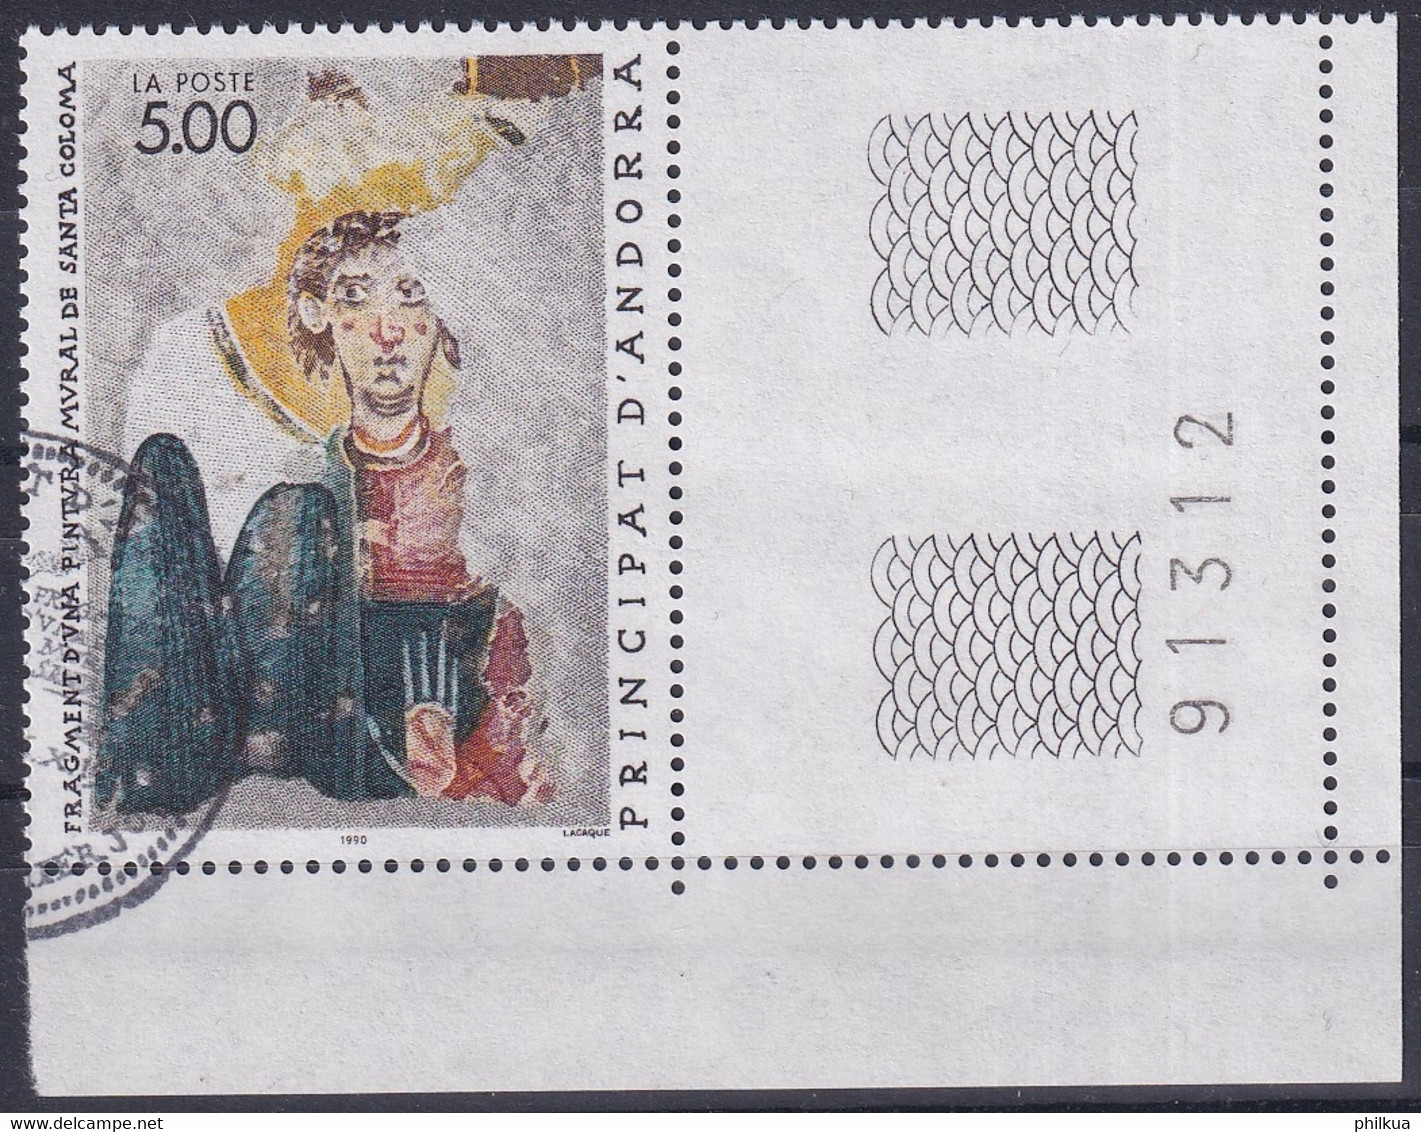 MiNr. 417 Andorra Französische Post1990, 6. Okt. Religiöse Kunst - Usati